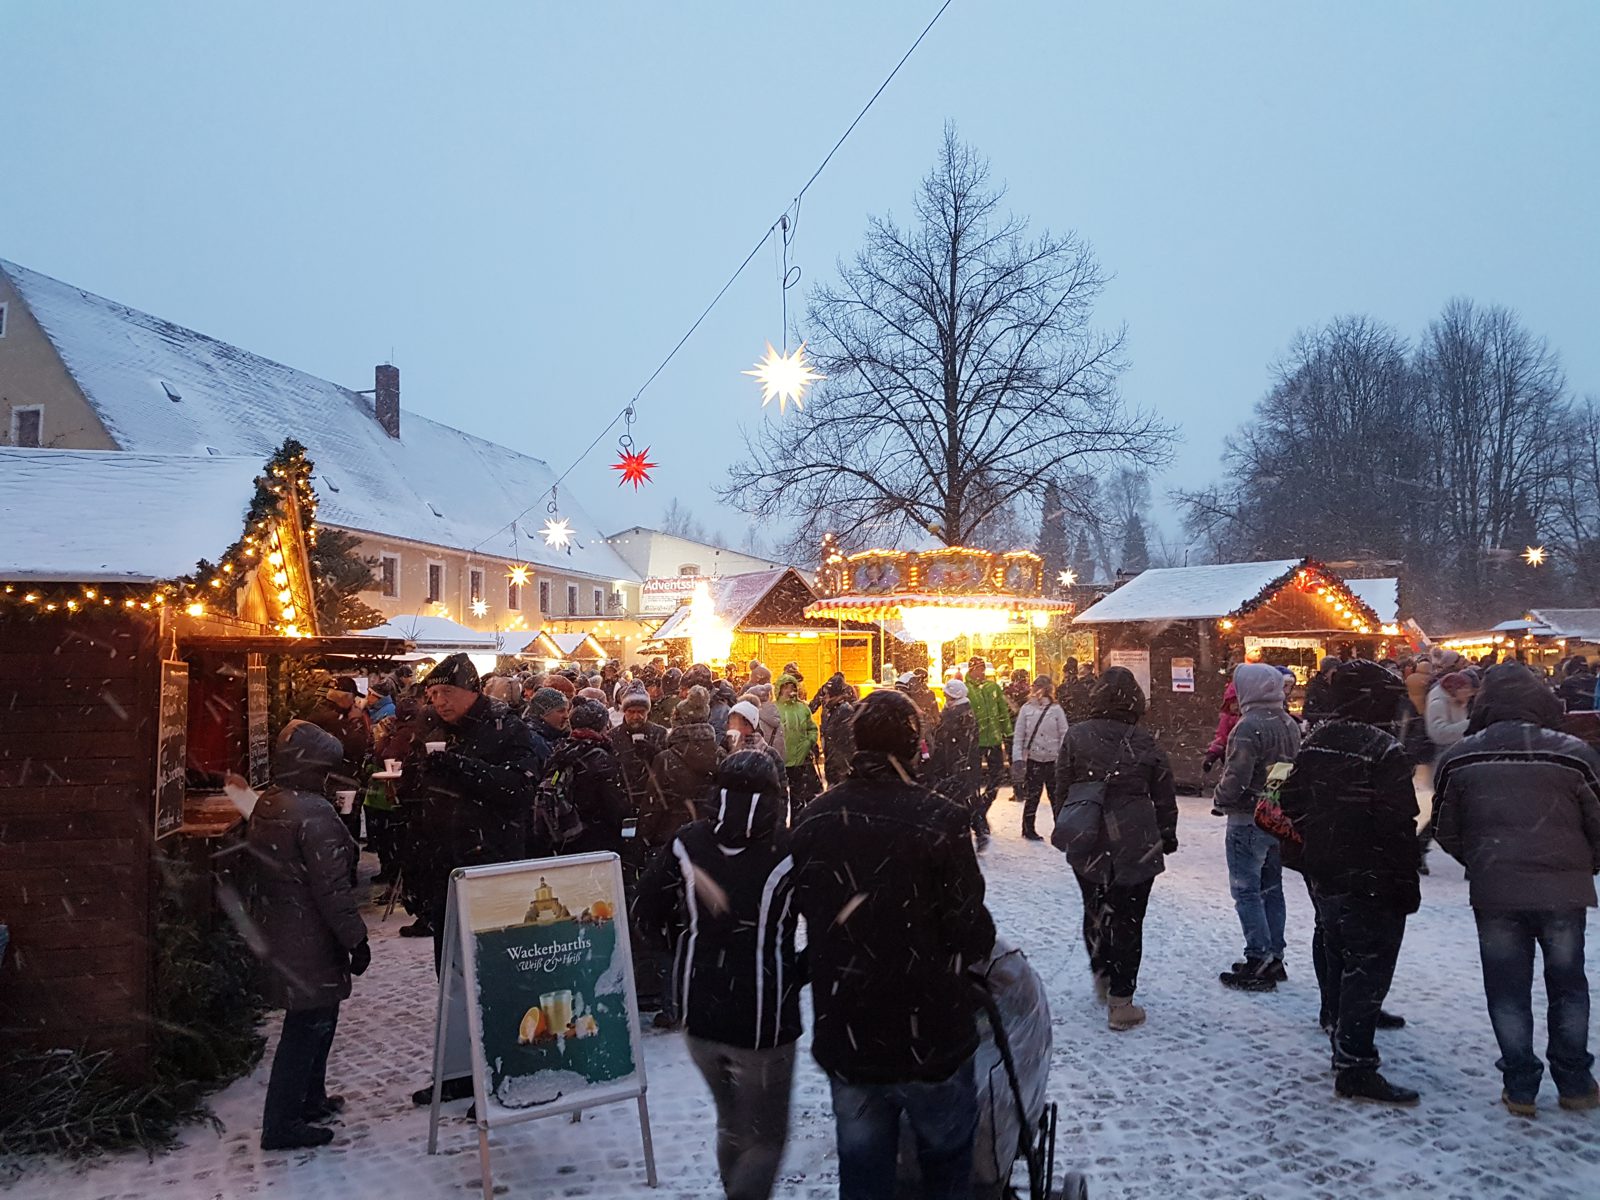 Weihnachtsmarkt in Olbernhau im Erzgebirge